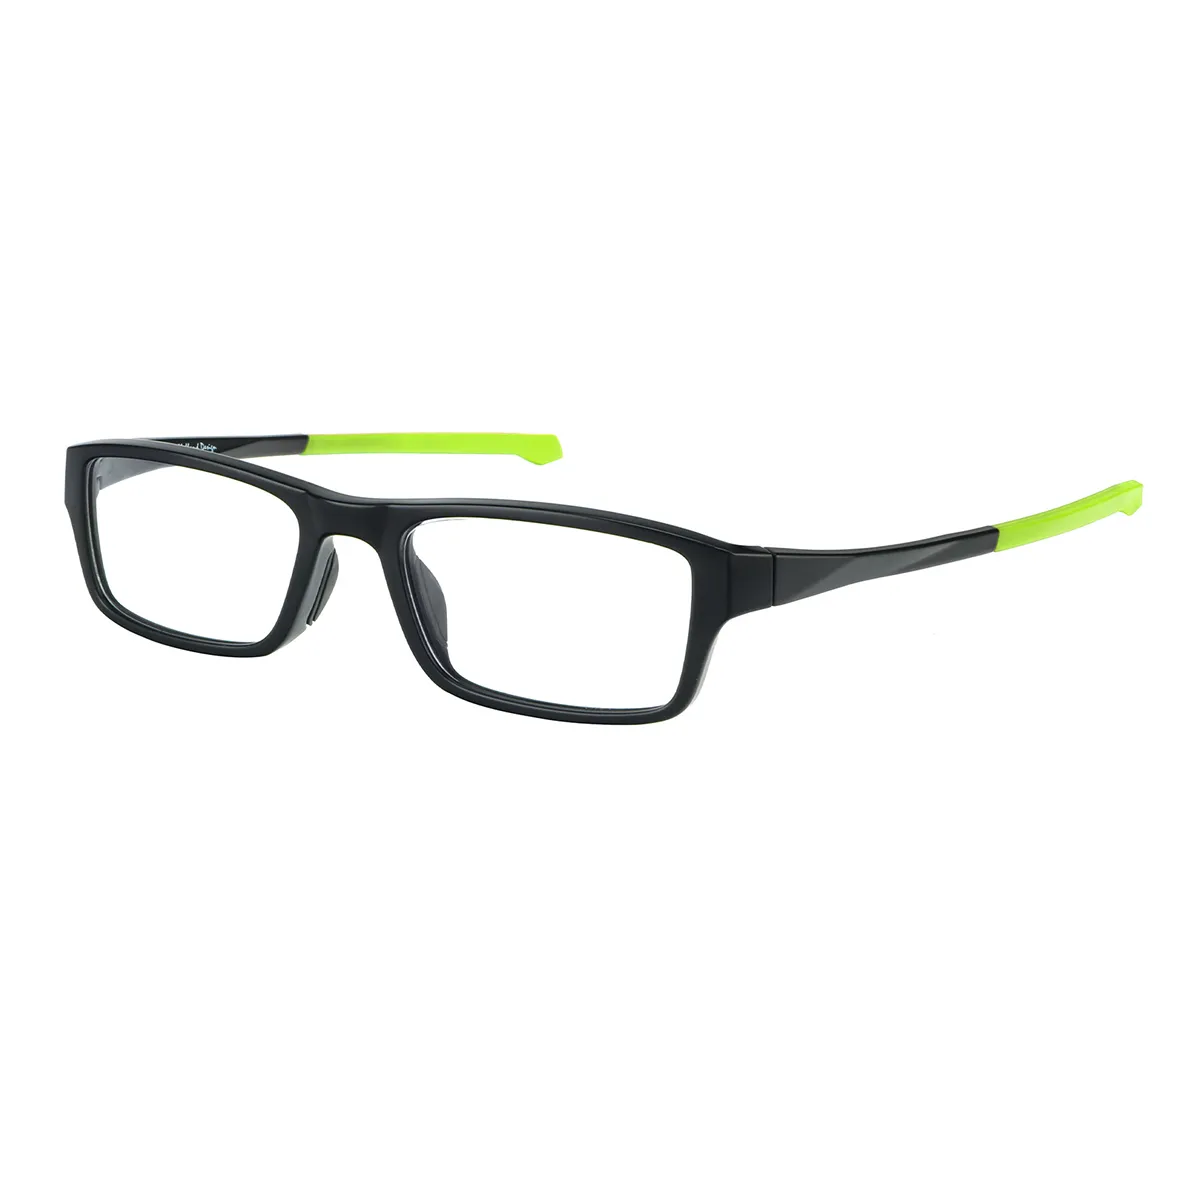 Arch - Rectangle Black-Green Glasses for Men & Women